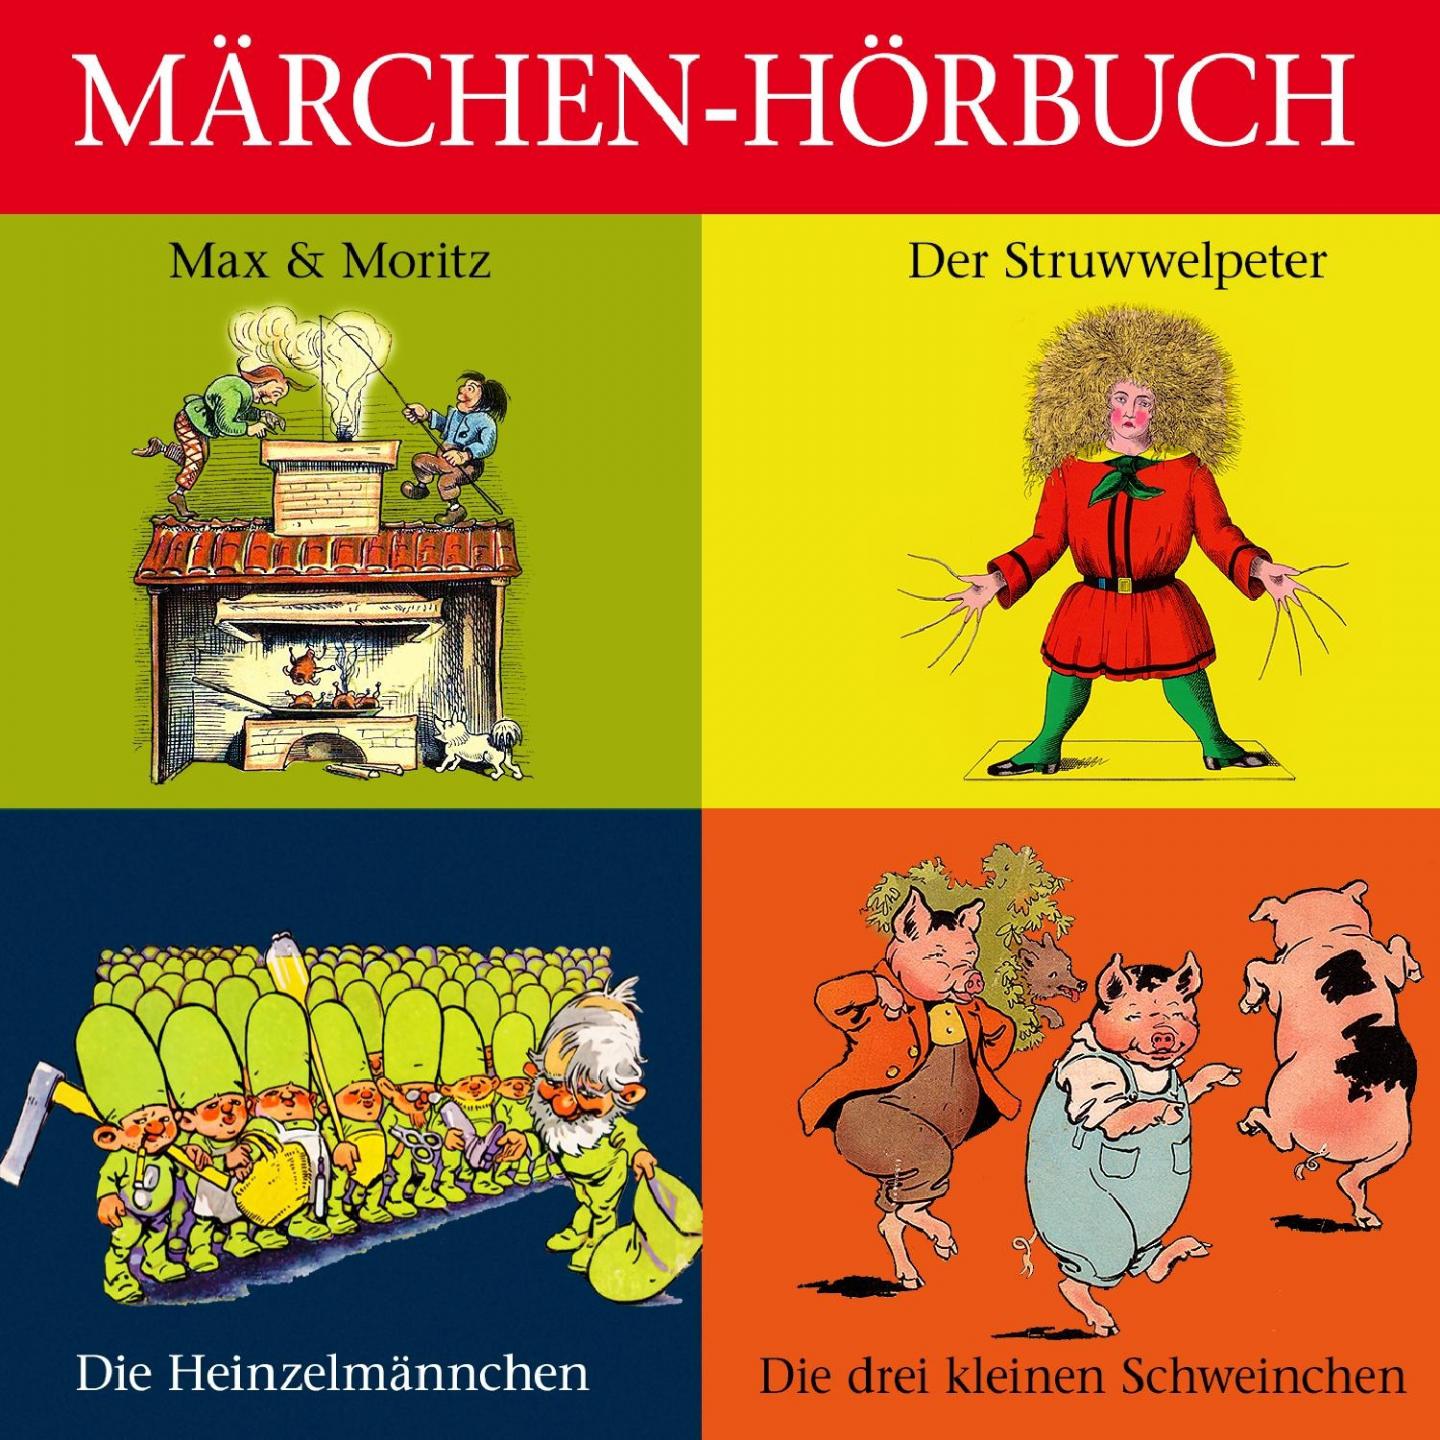 Der Struwwelpeter, Max & Moritz u.v.m.